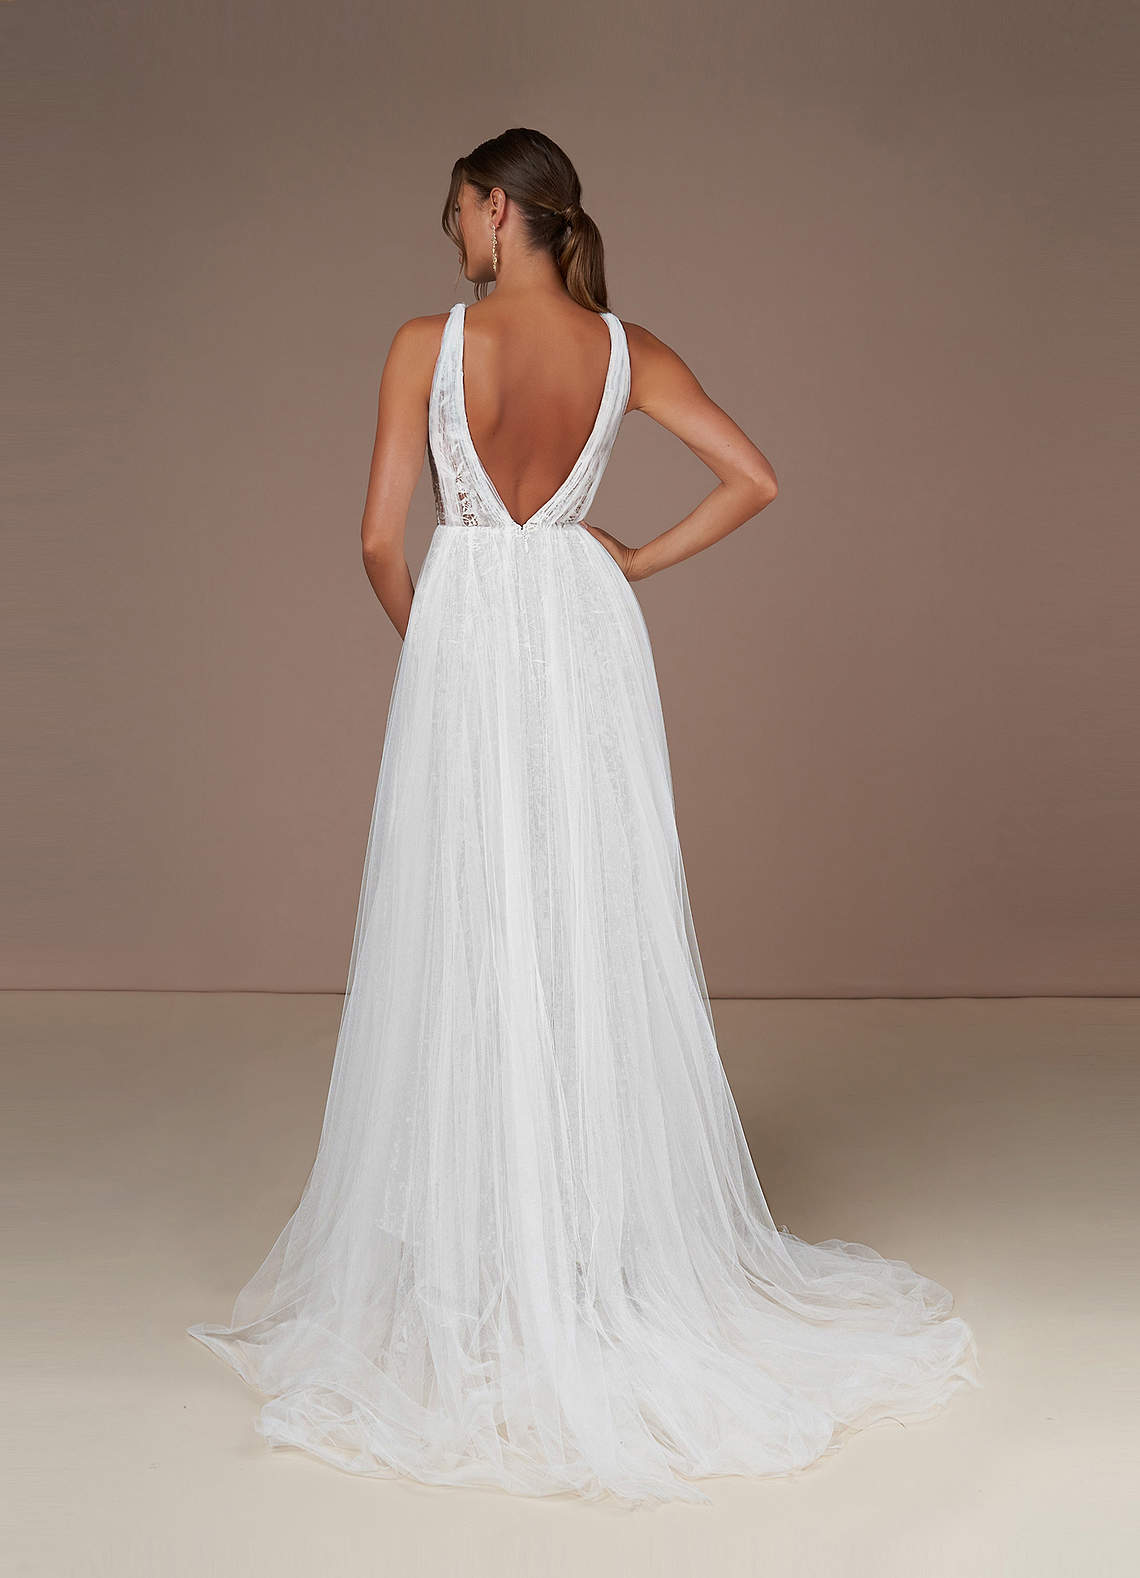 Platinum Wedding Dresses A-Line Sequins Tulle Chapel Train Dress image1